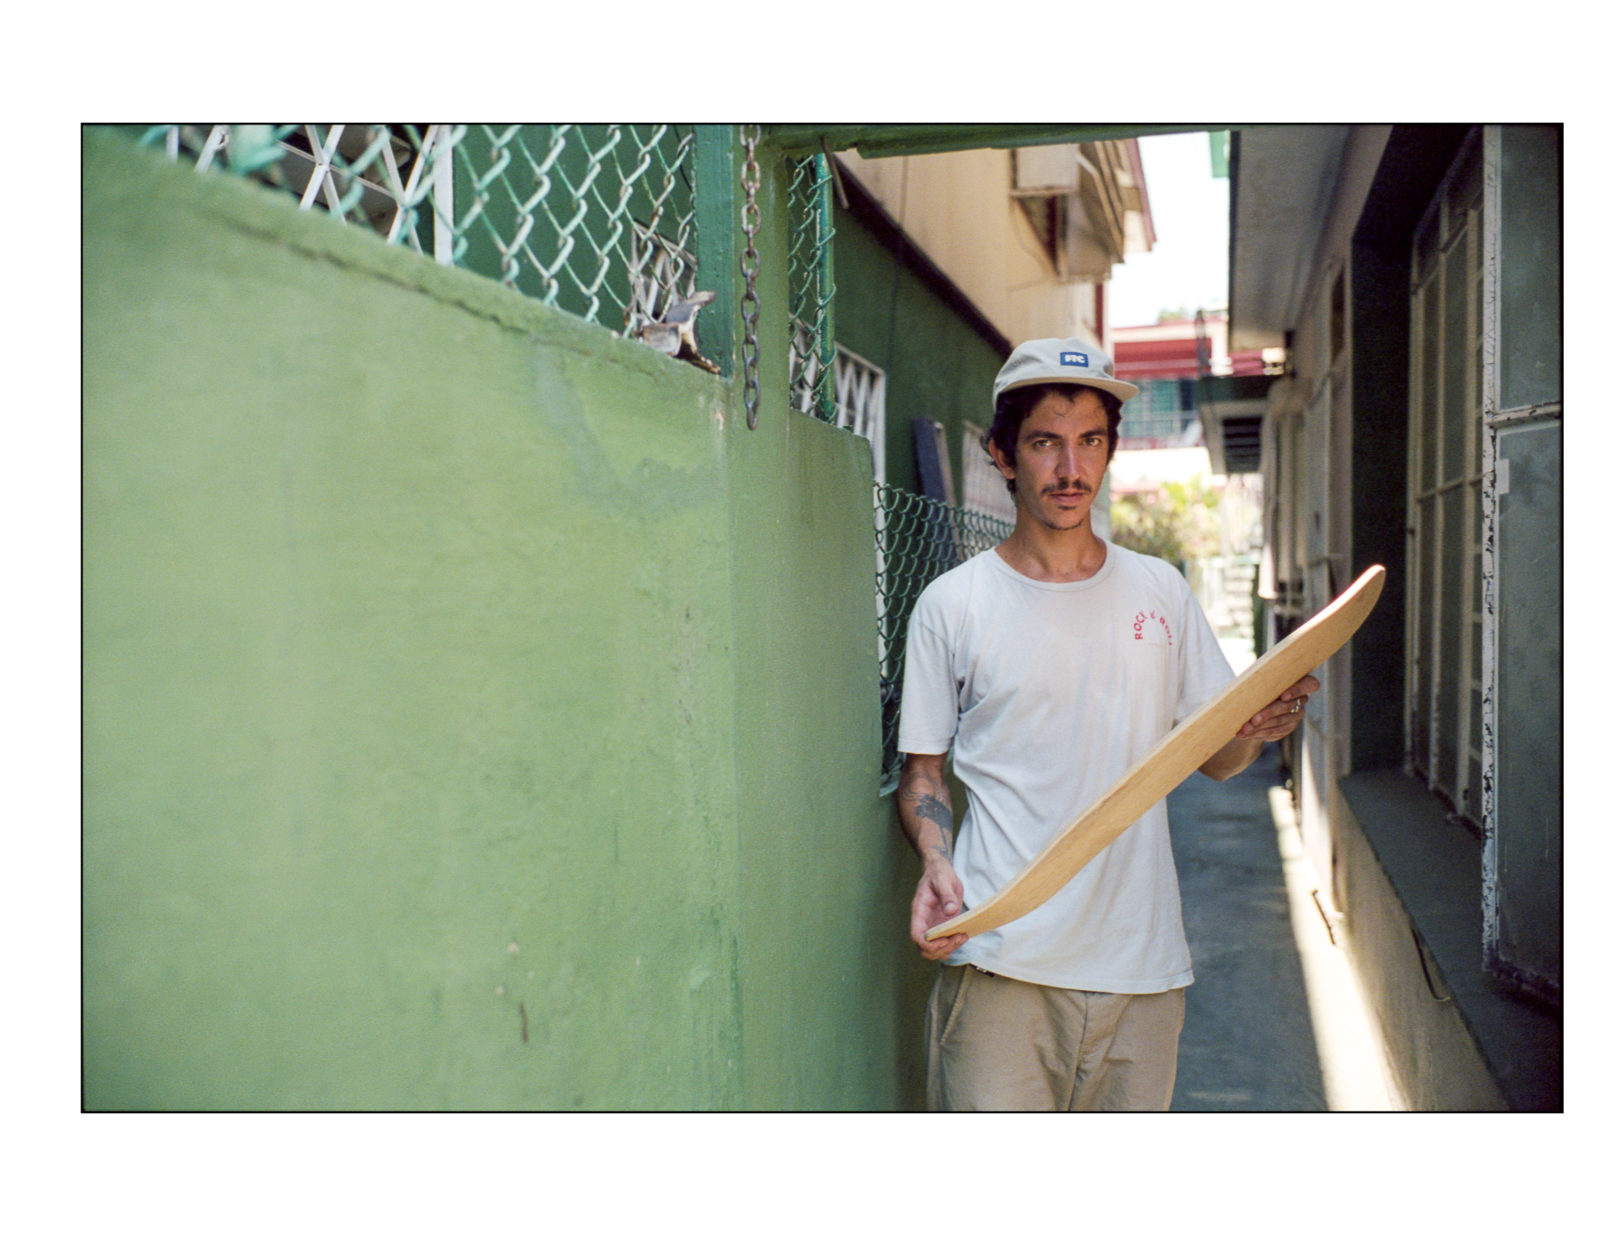 Nestor photo of cuban skateboard